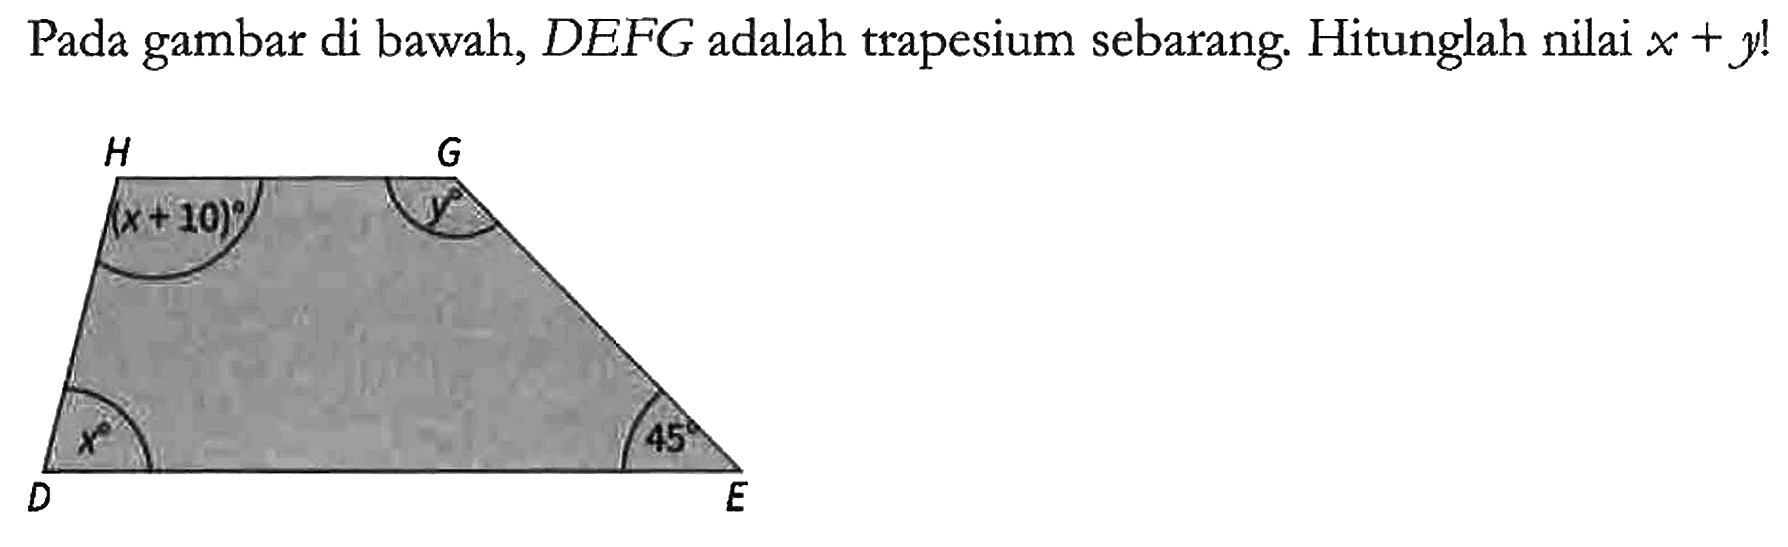 Pada gambar di bawah, DEFG adalah trapesium sebarang. Hitunglah nilai x + y!

H x + 10 G y D x E 45